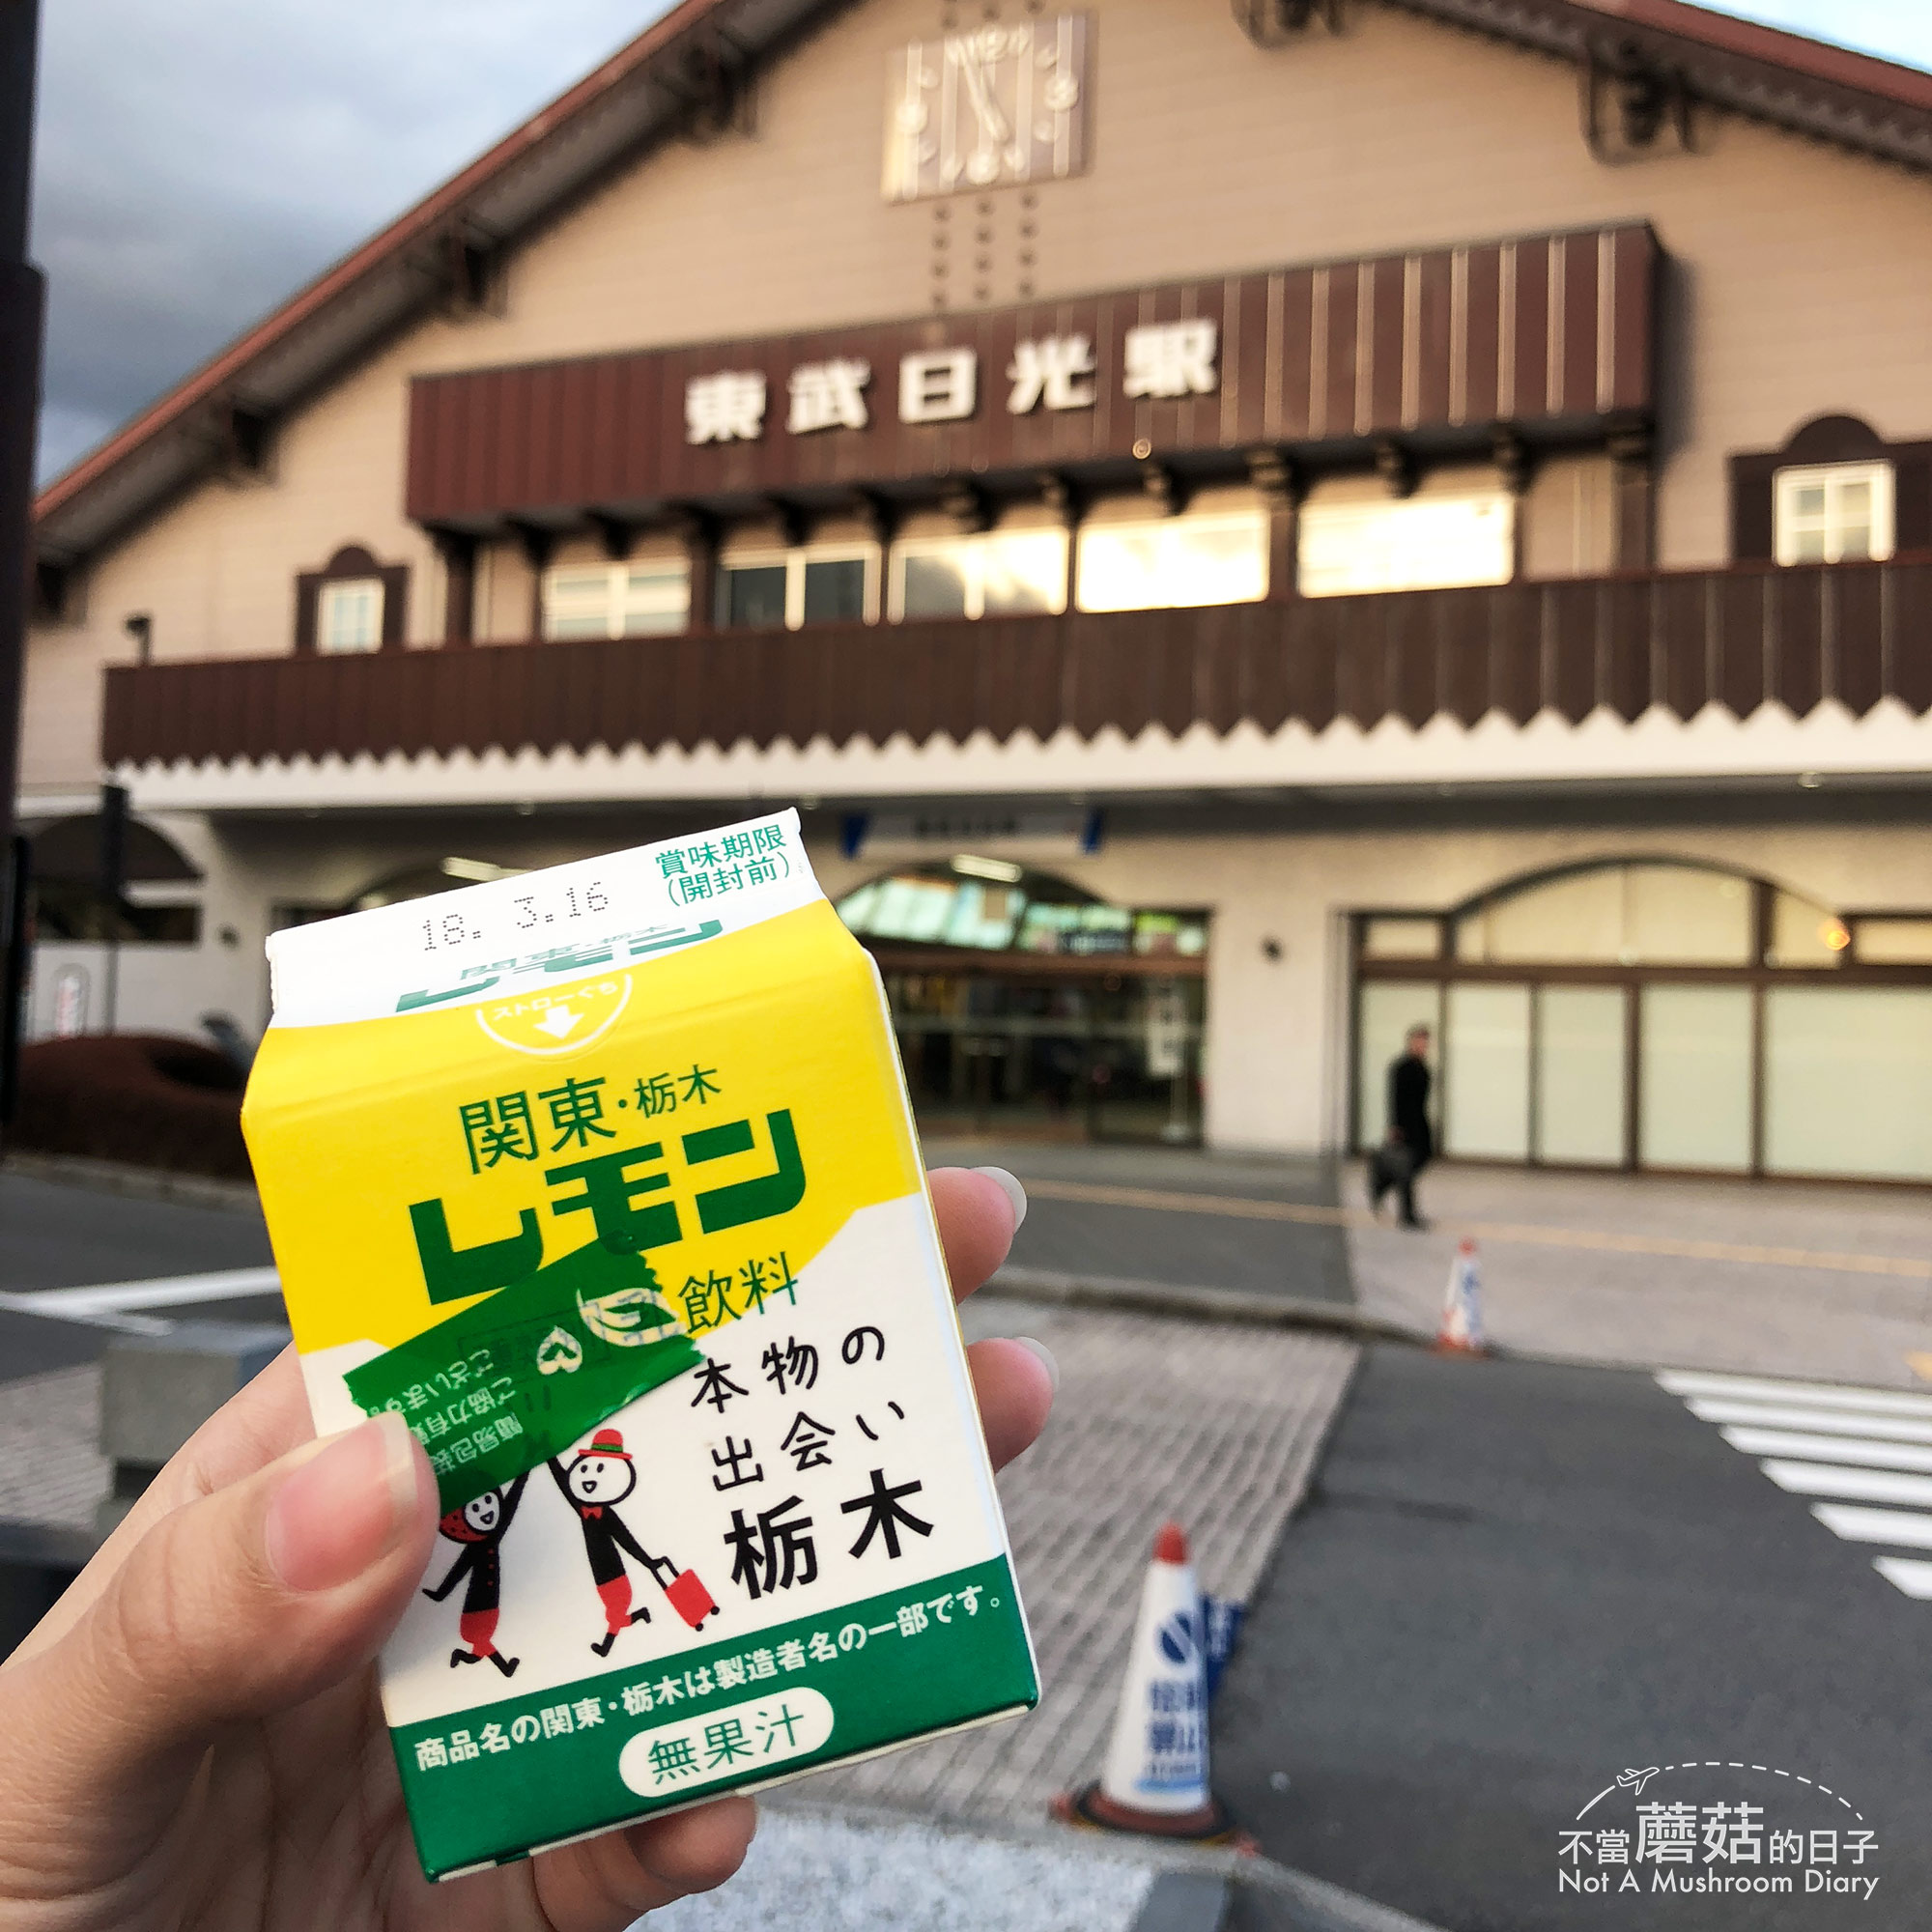 日光 檸檬牛奶 東京 日本